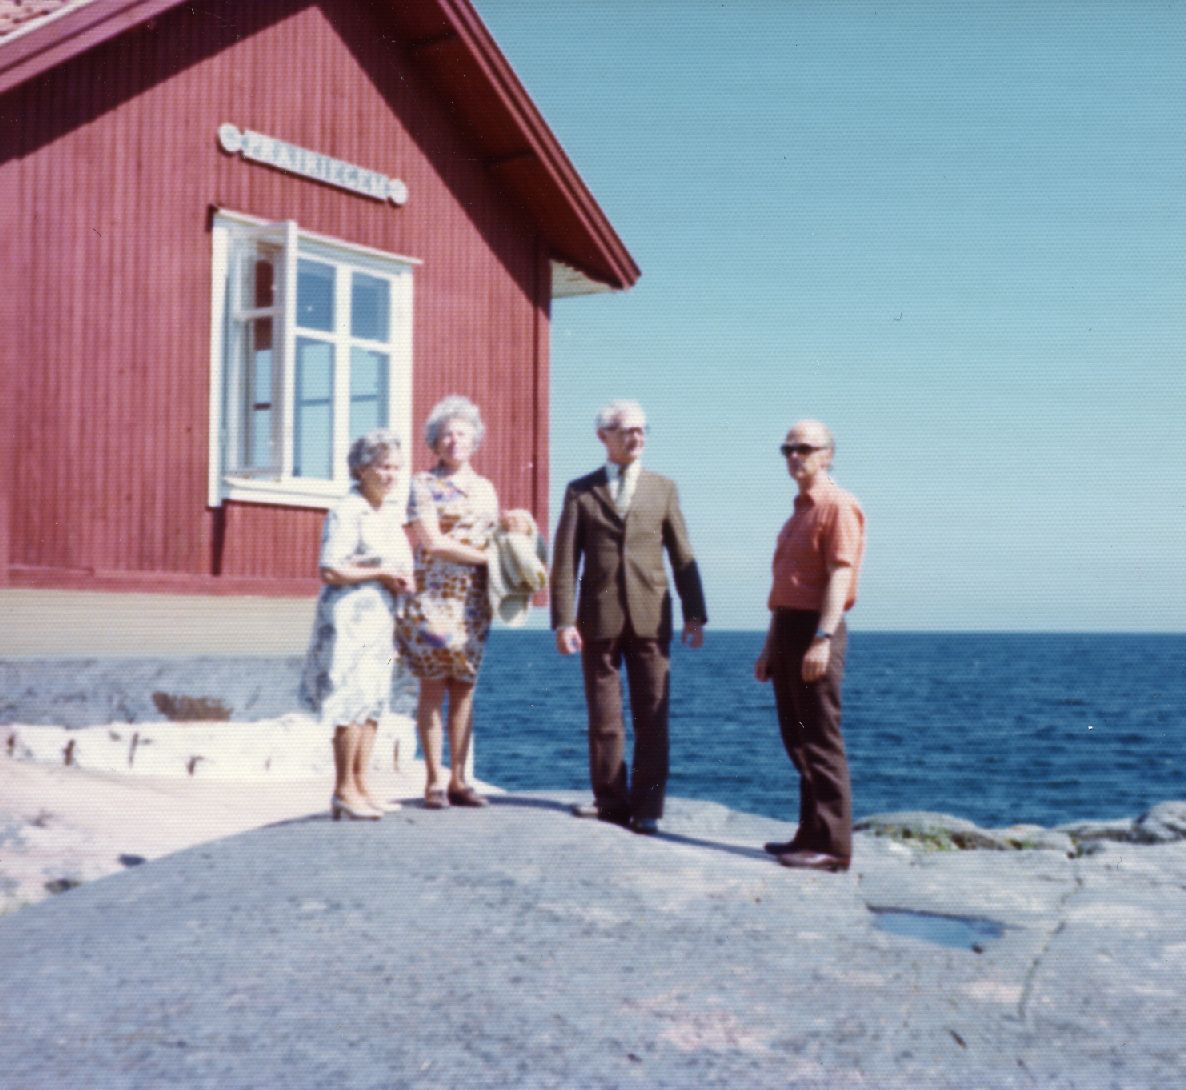 Arvo Mägi, Karl Ristikivi, Liidia Mägi and